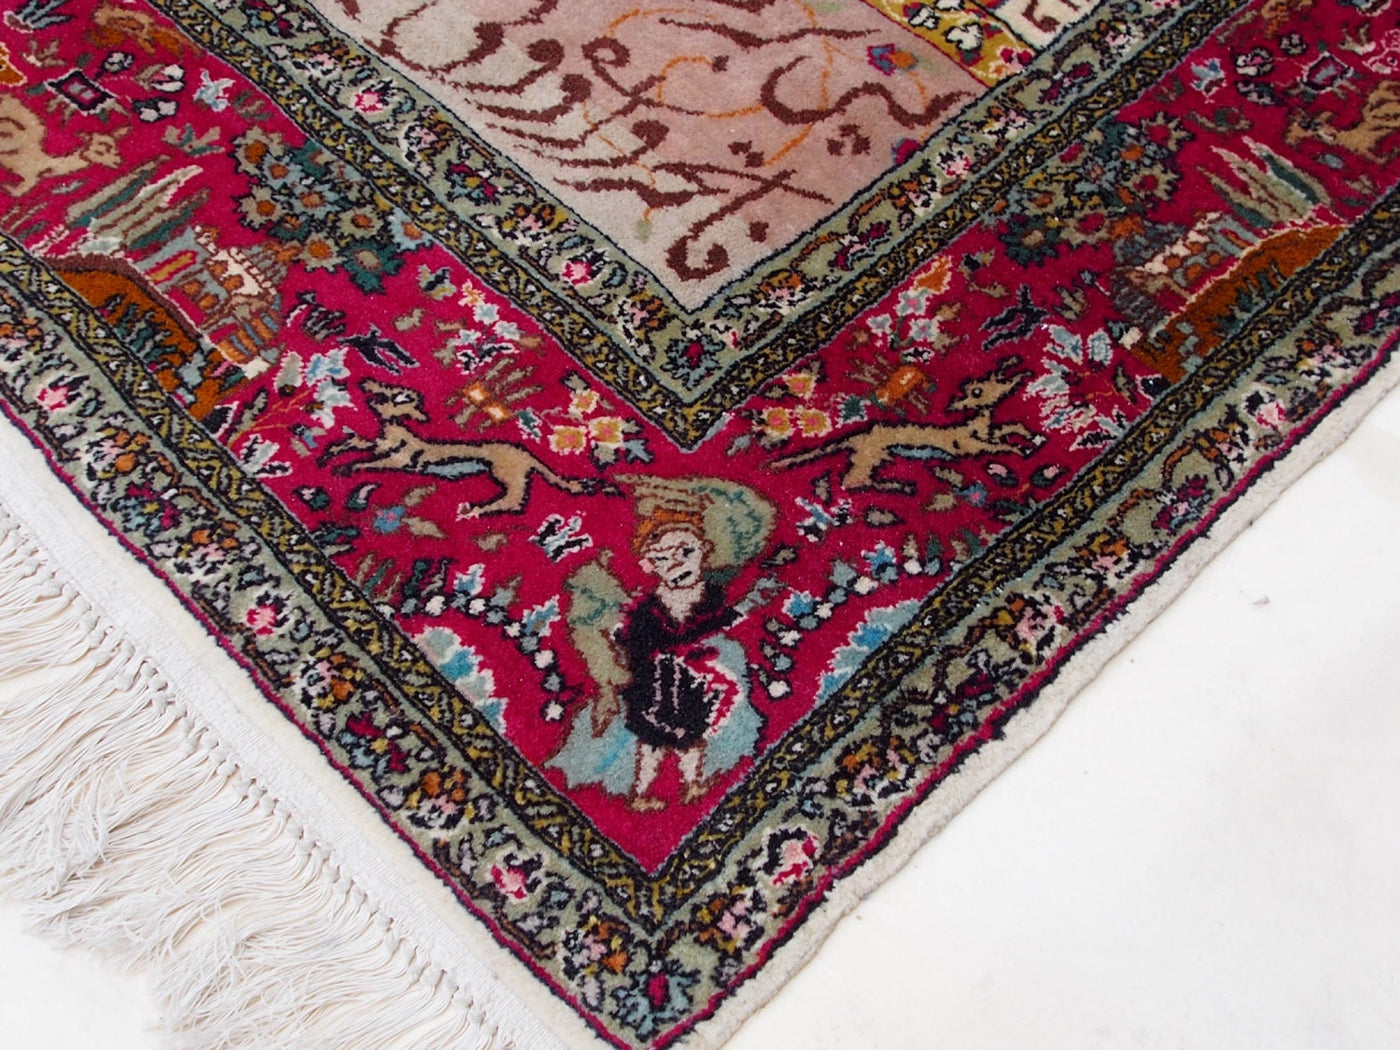 225x 129 cm sehr Seltener handgeknüpft orientteppich  wandteppich mit Mogulzeit Könige Porträts  Orientsbazar   